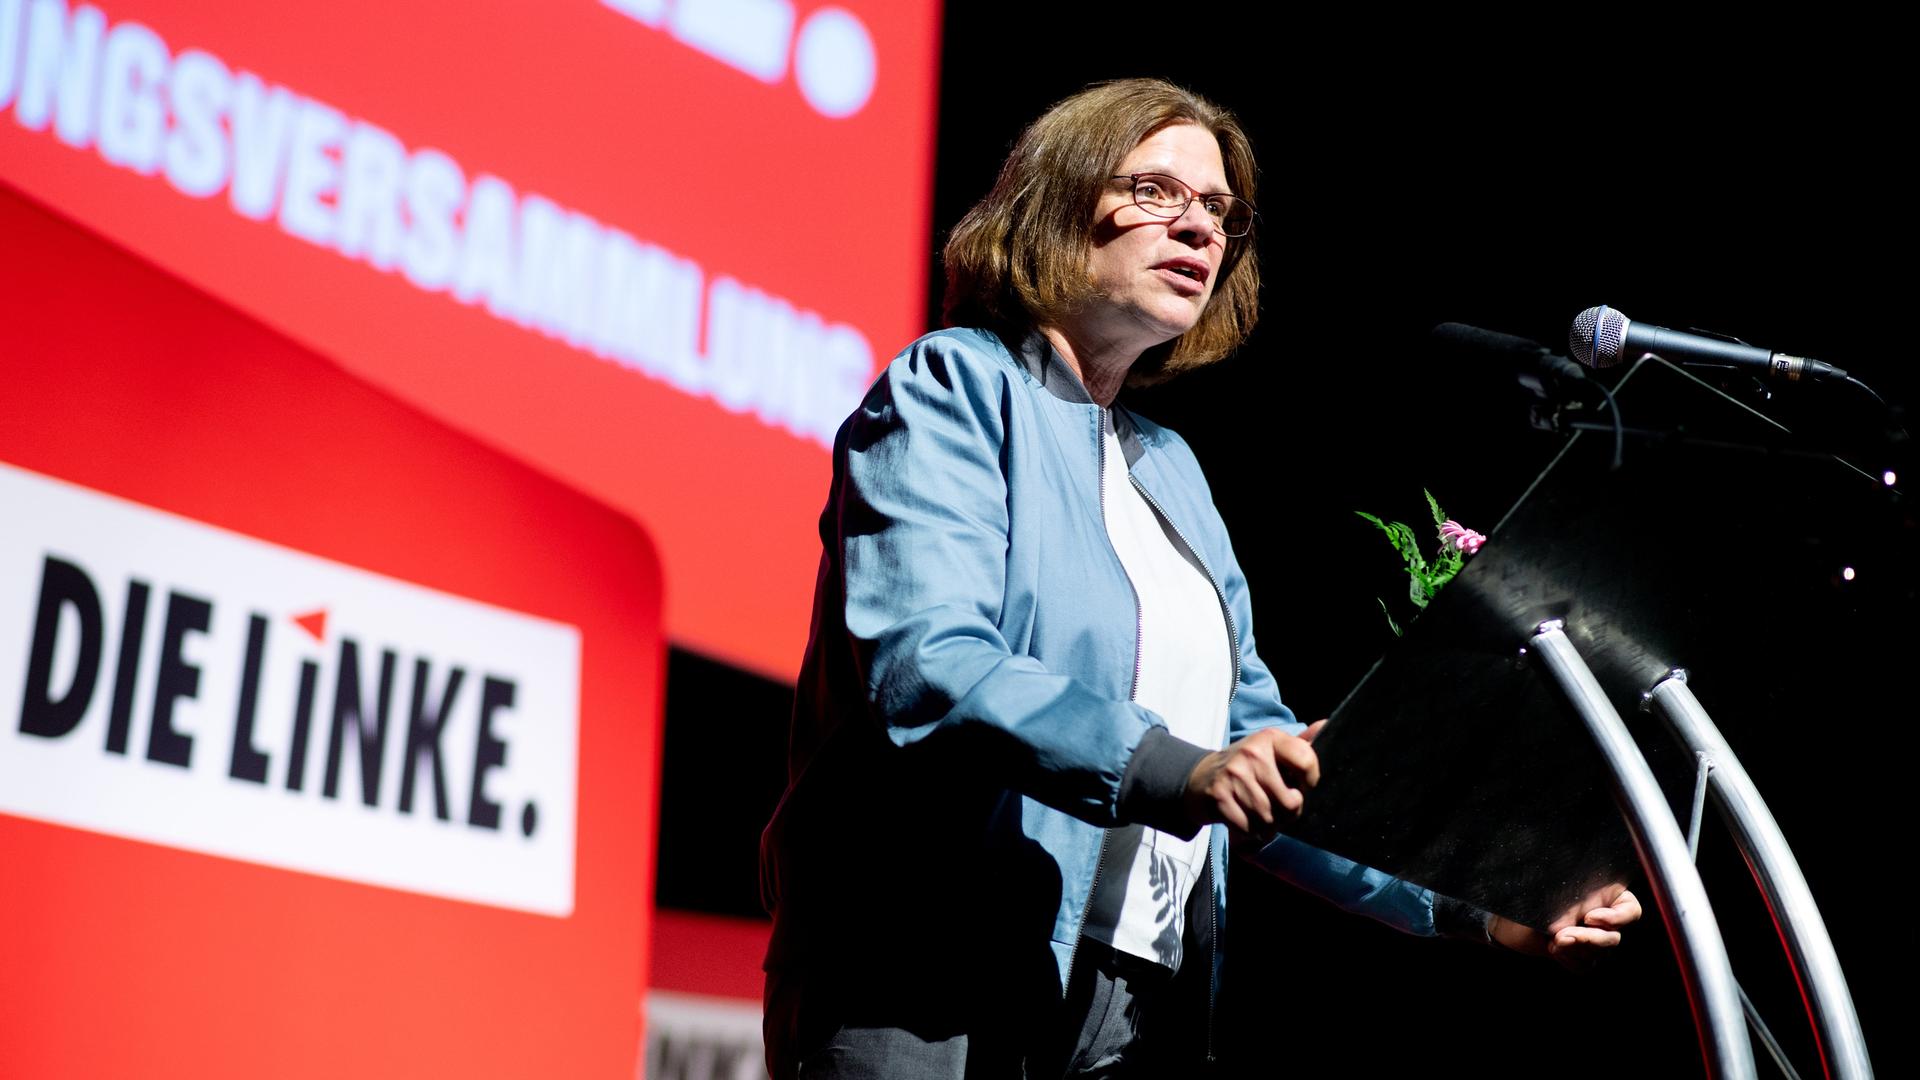 Eine Frau mit länglichen Haaren und Brille steht auf einer Bühne vor einem Pult und hält eine Rede.